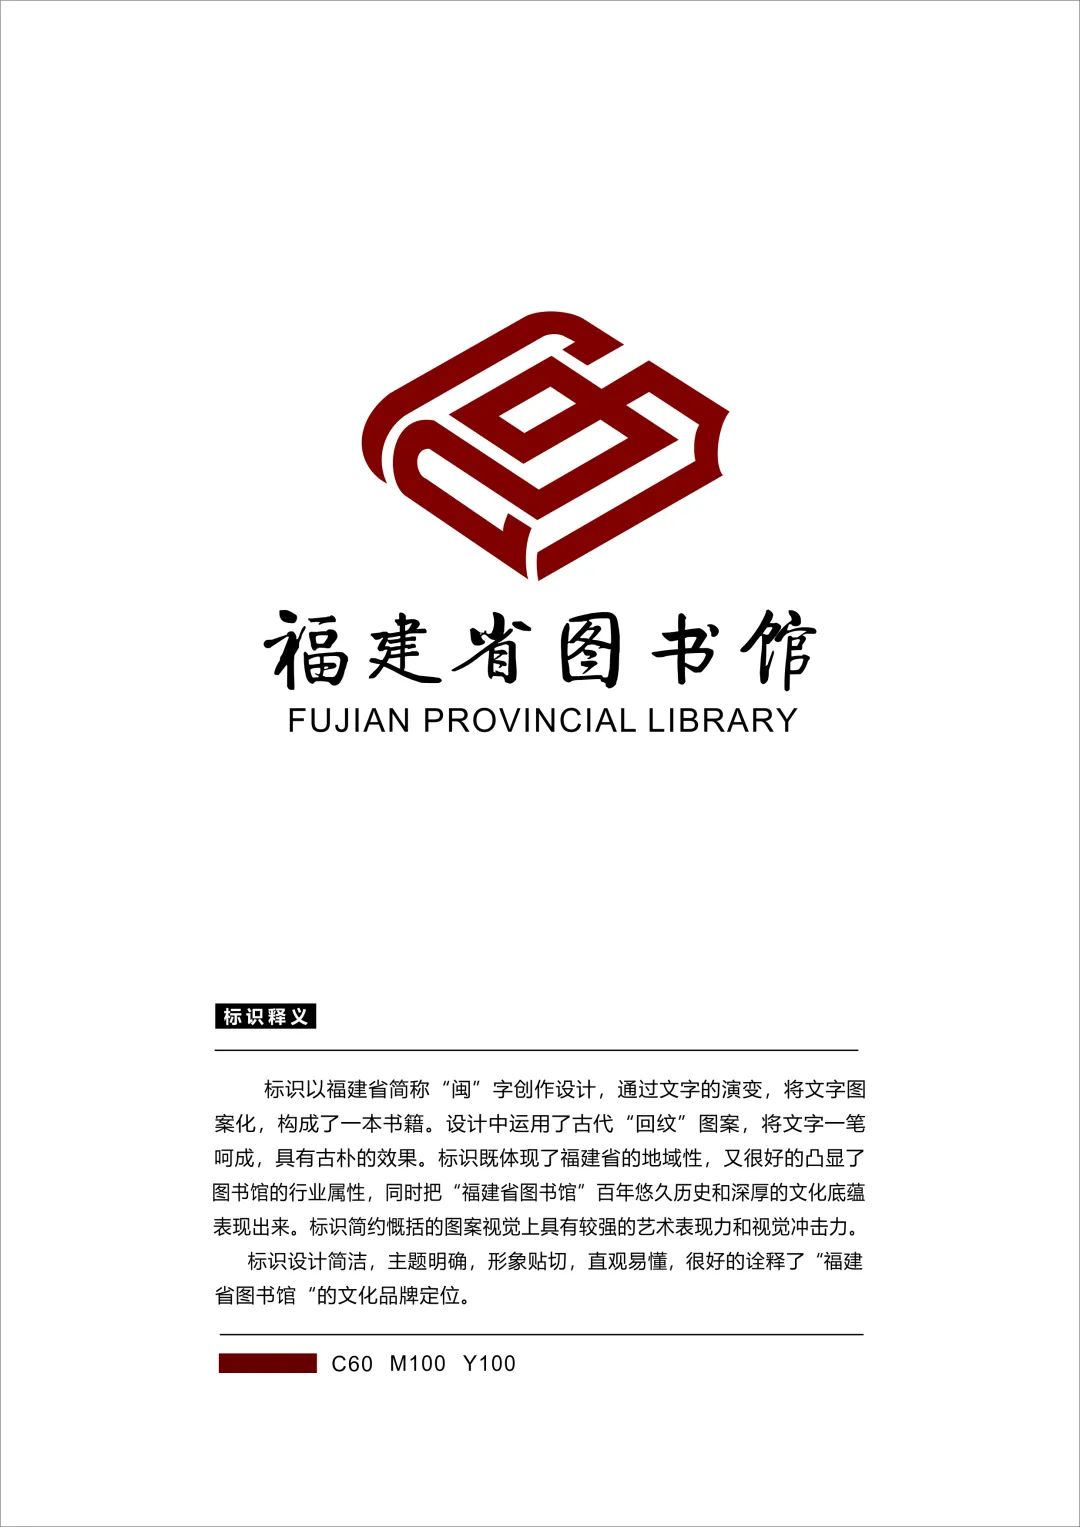 福建省图书馆标识logo设计征集活动网络投票开始了